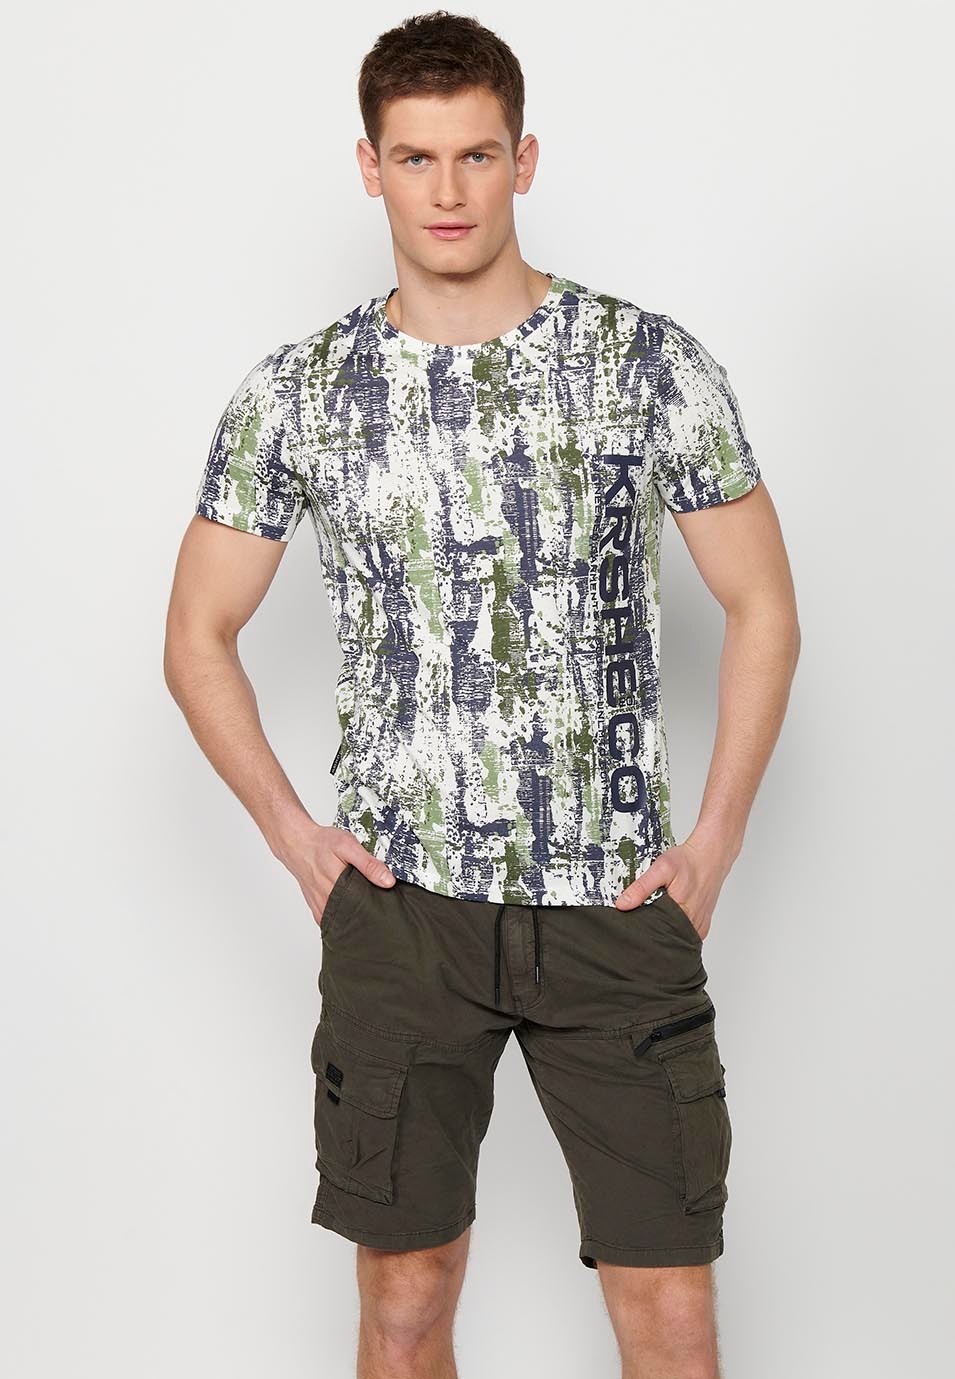 Camiseta de manga corta de algodo, estampada multicolor para hombre